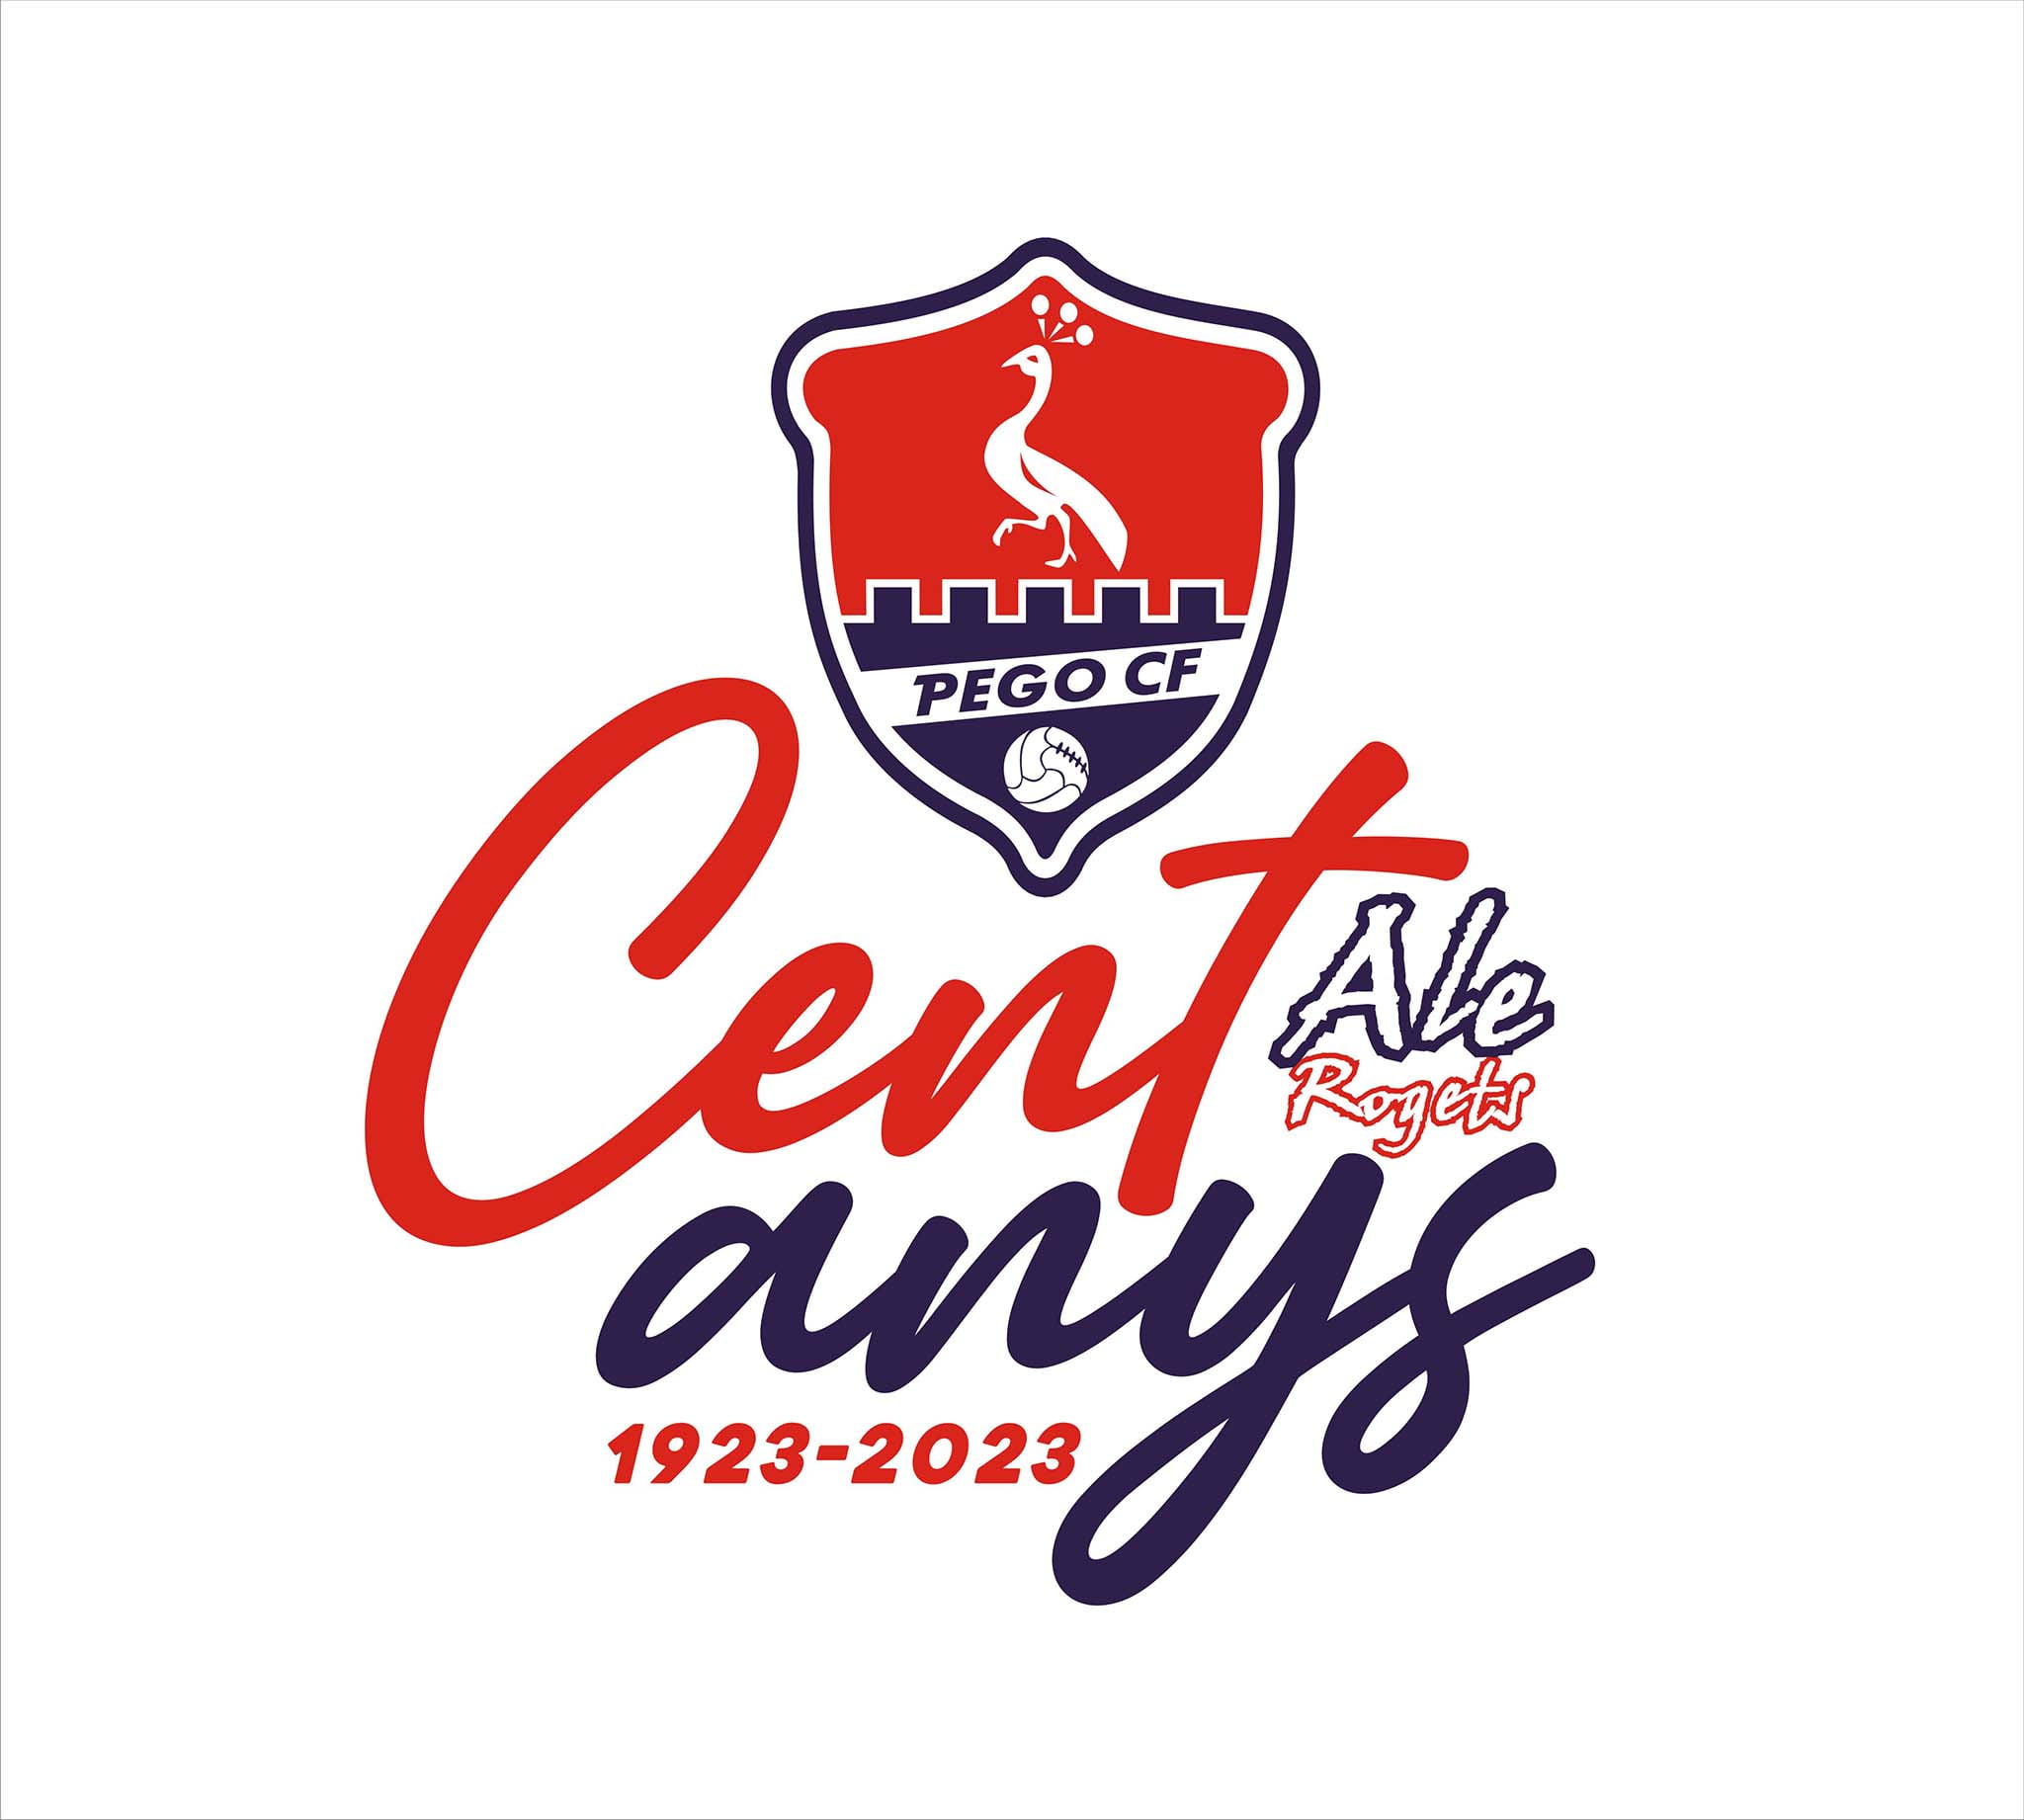 Logotipo oficial del centerario del club pegolí